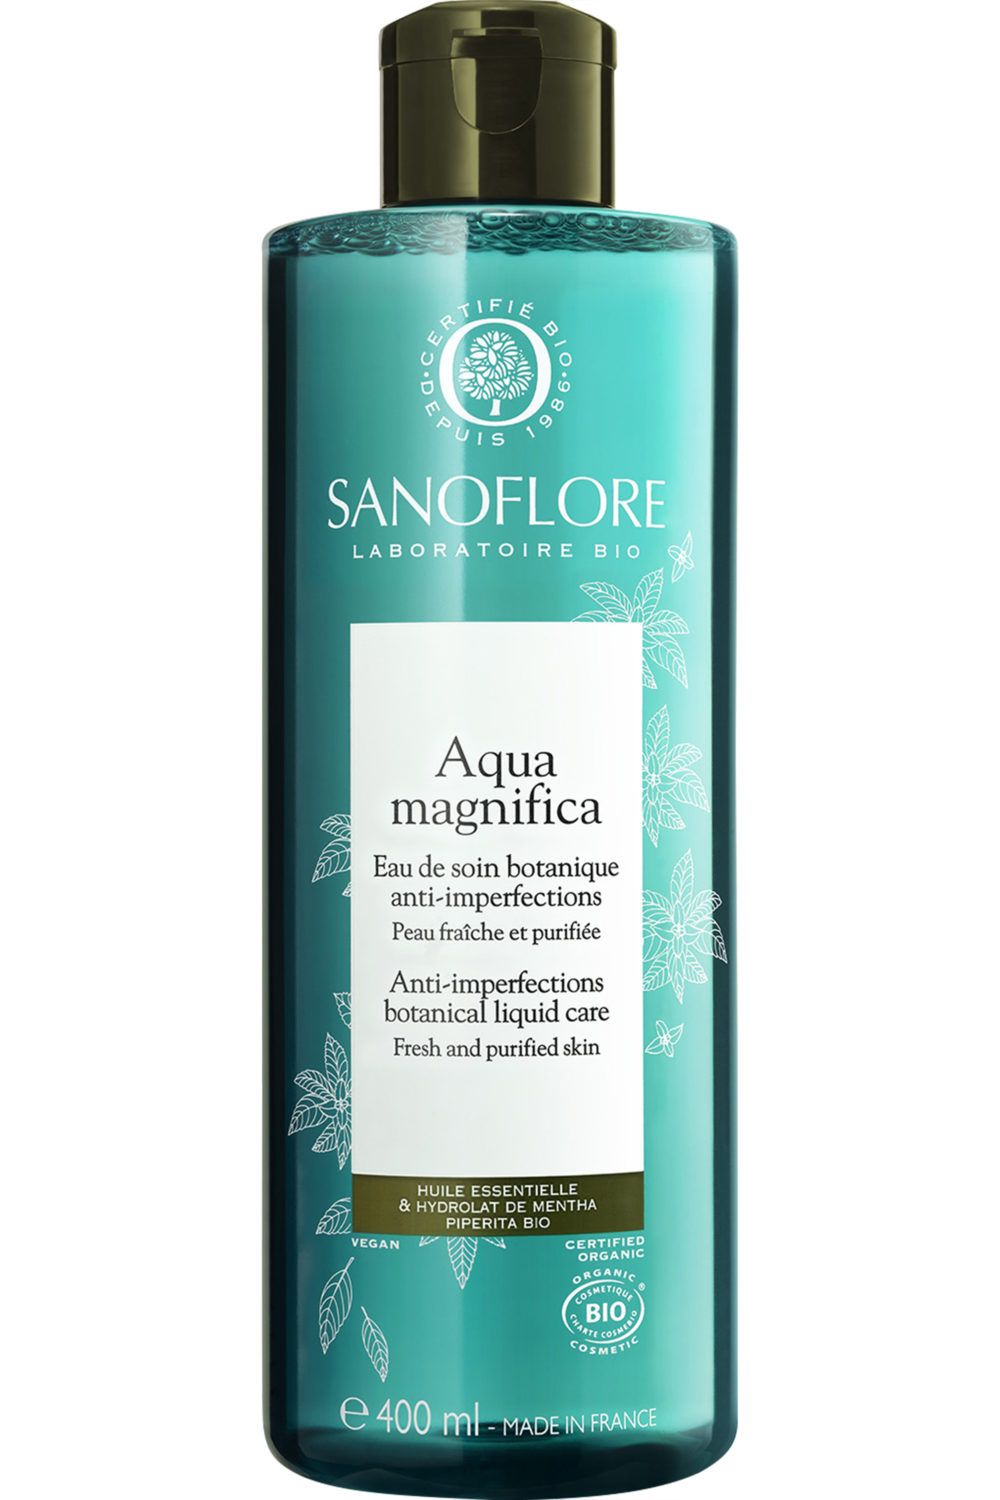 Sanoflore - Magnifica Aqua 400ml